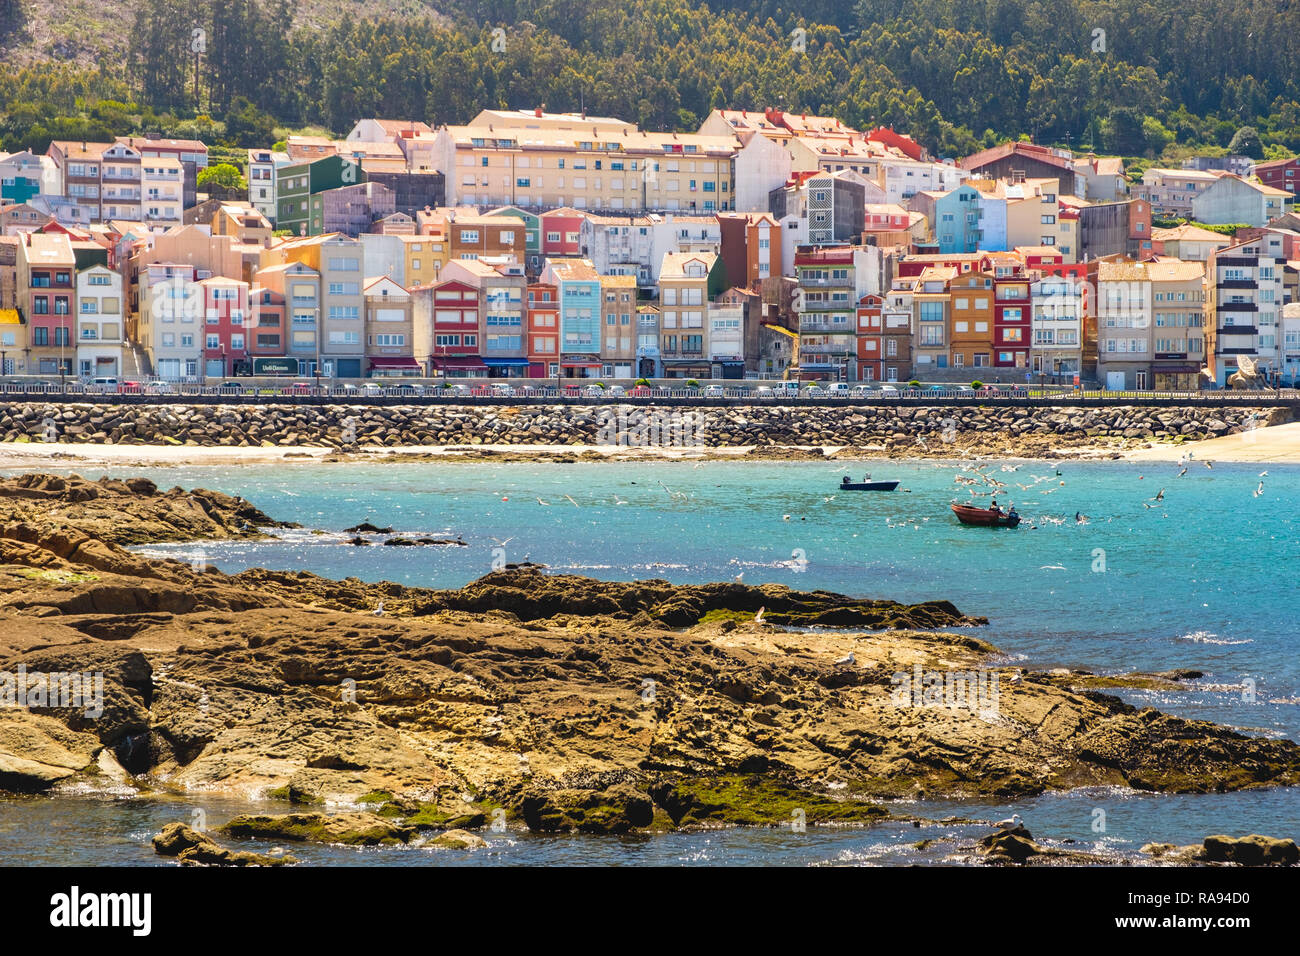 A Guarda, Espanha - May 03, 2018 : Houses on the edge of the port of A Guarda Pontevedra, Espanha Stock Photo